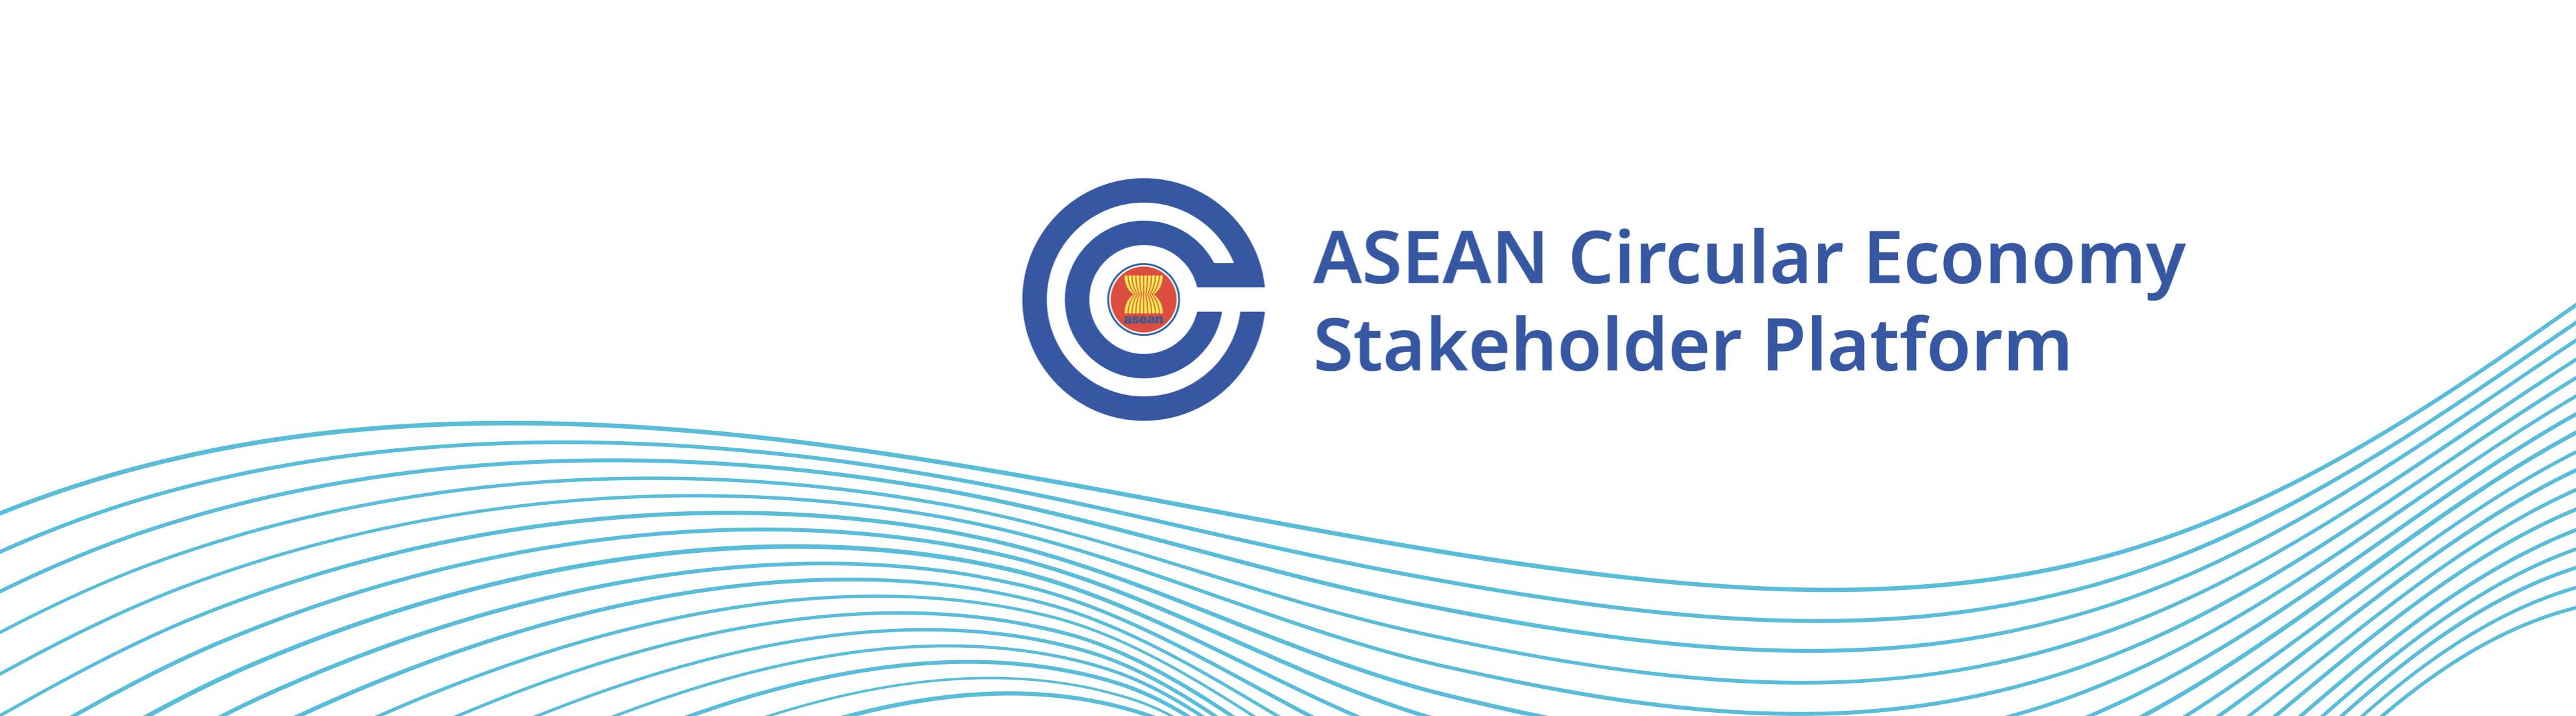 ASEAN Circular Economy Stakeholder Platform